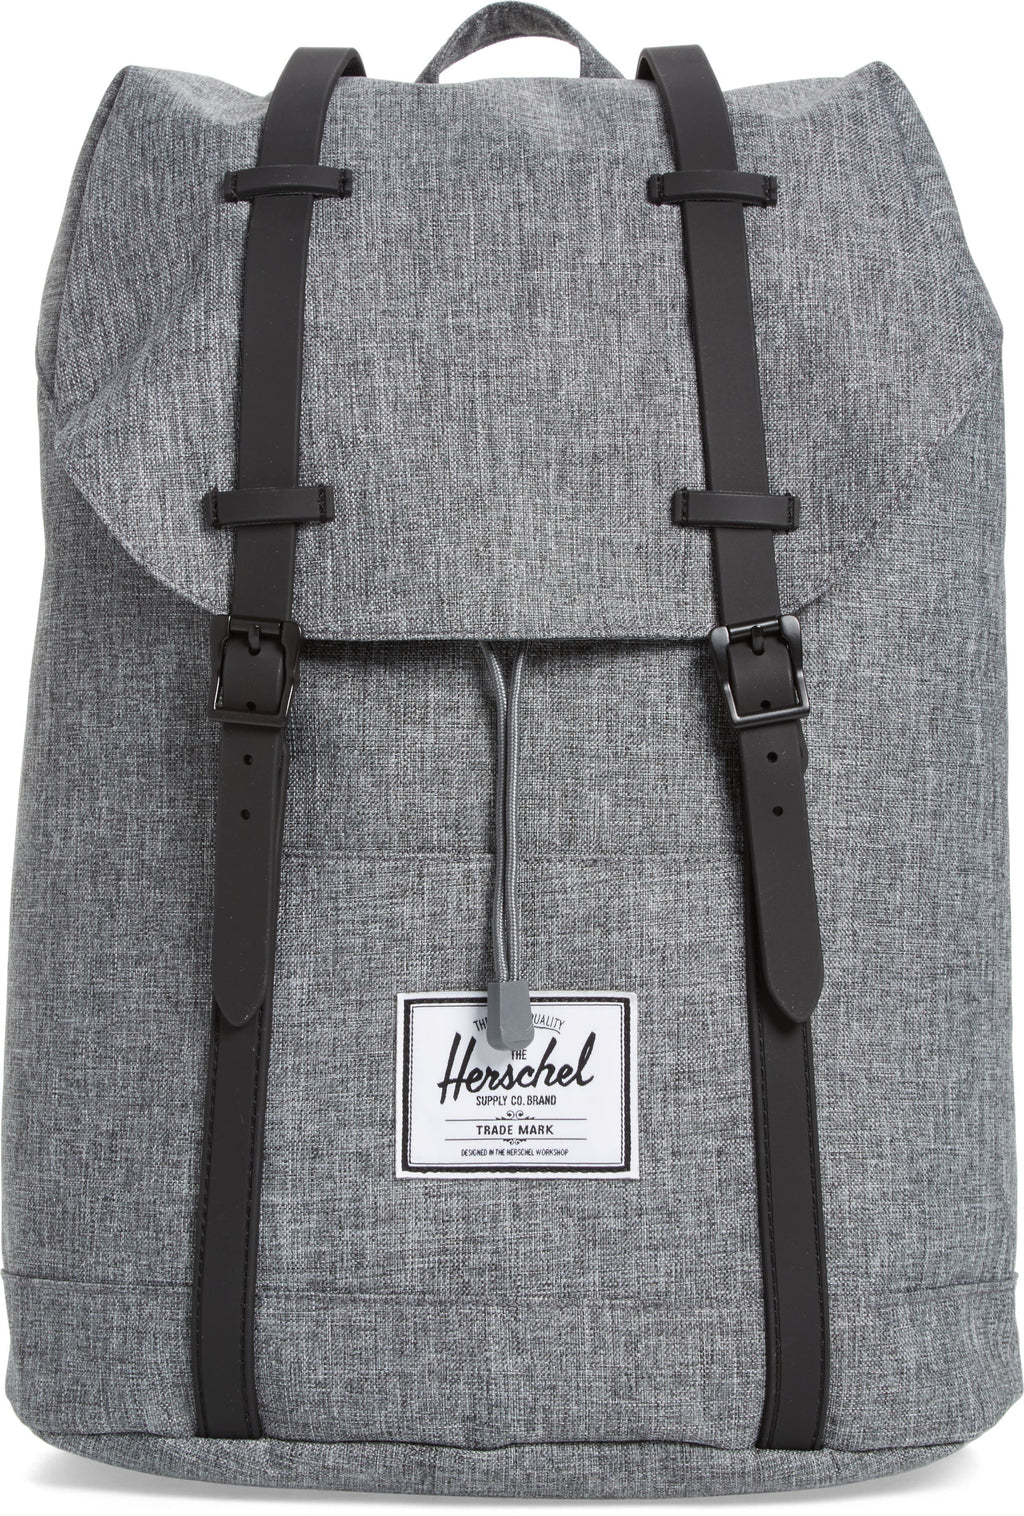 Herschel Supply Co. Retreat Backpack, Main, color, RAVEN CROSSHATCH